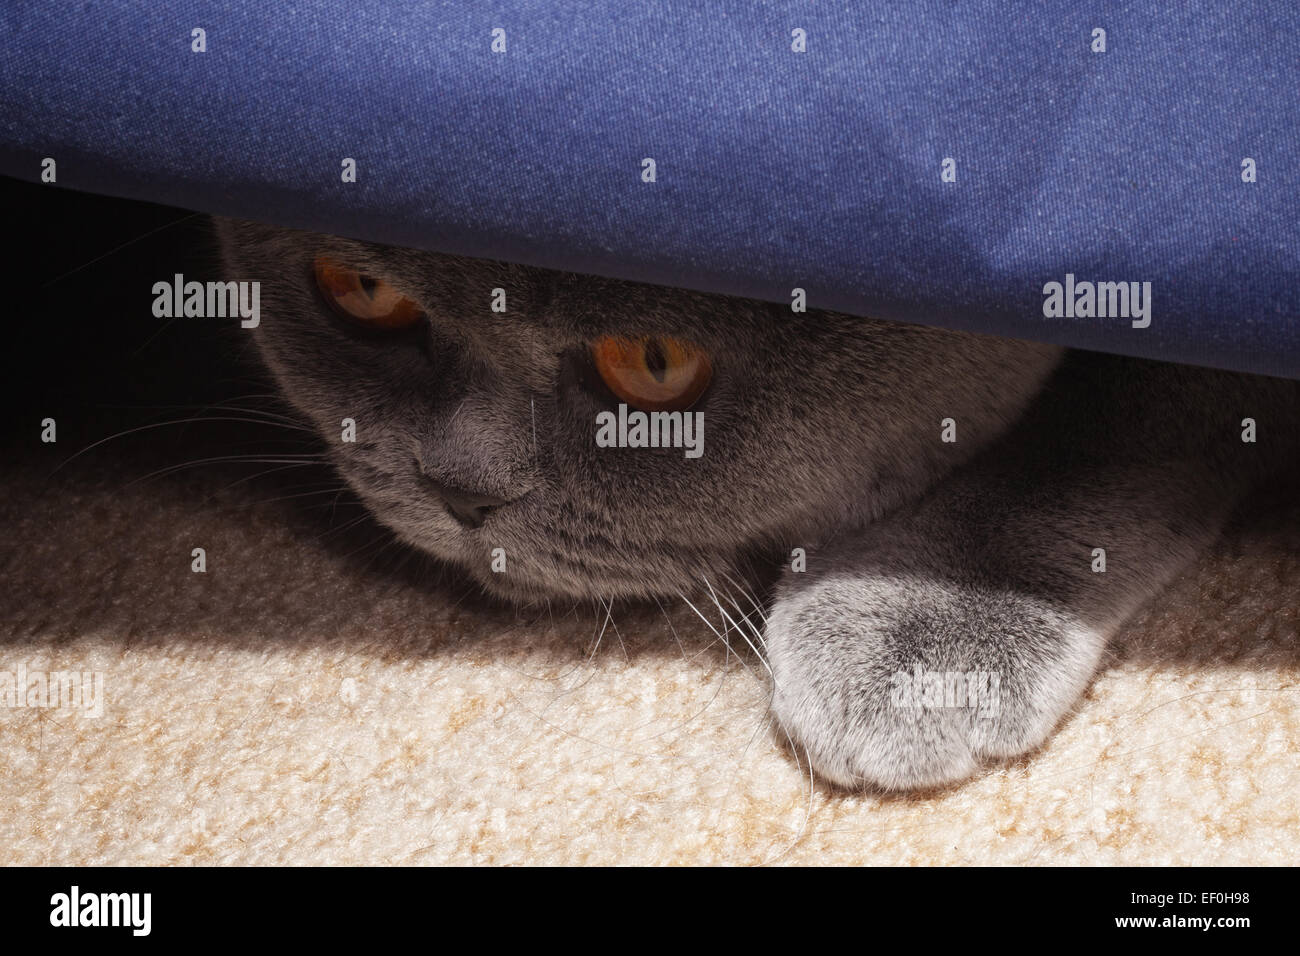 Hunting gray british cat close up Stock Photo